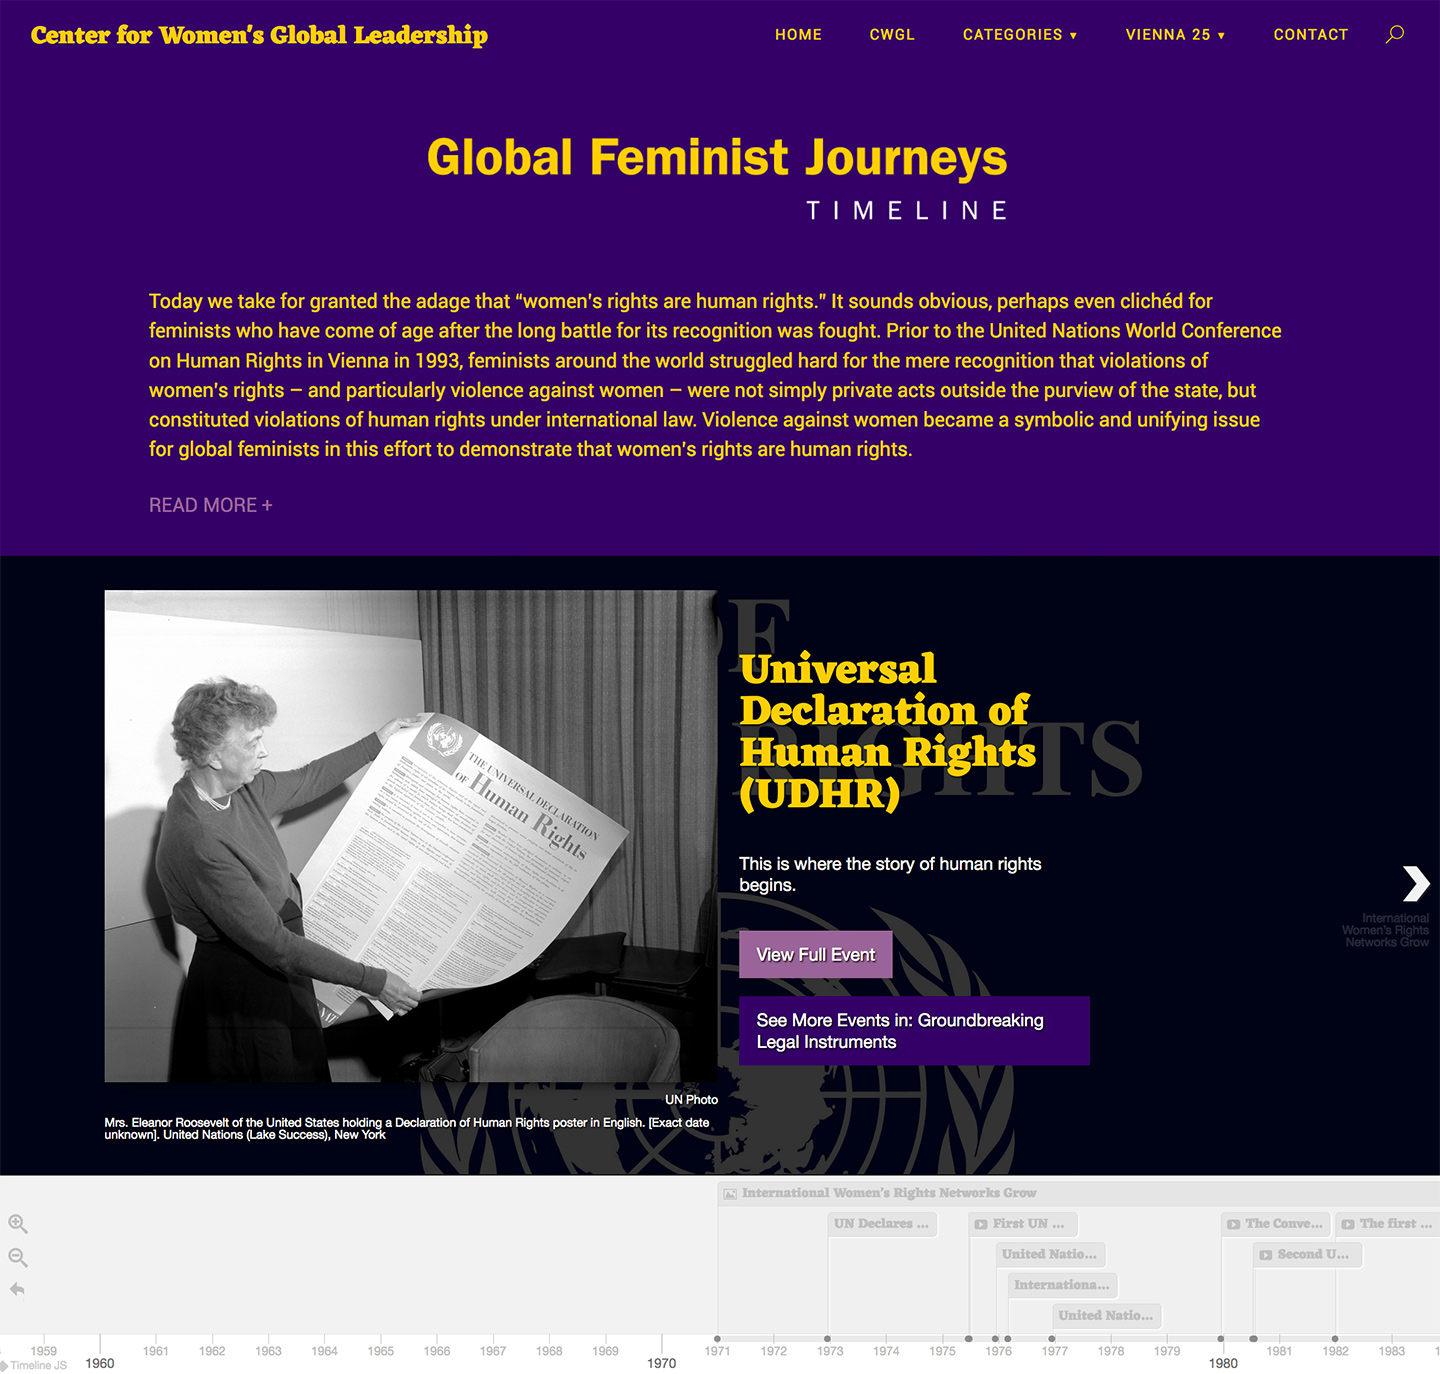 Celebrating Global Feminist Journeys